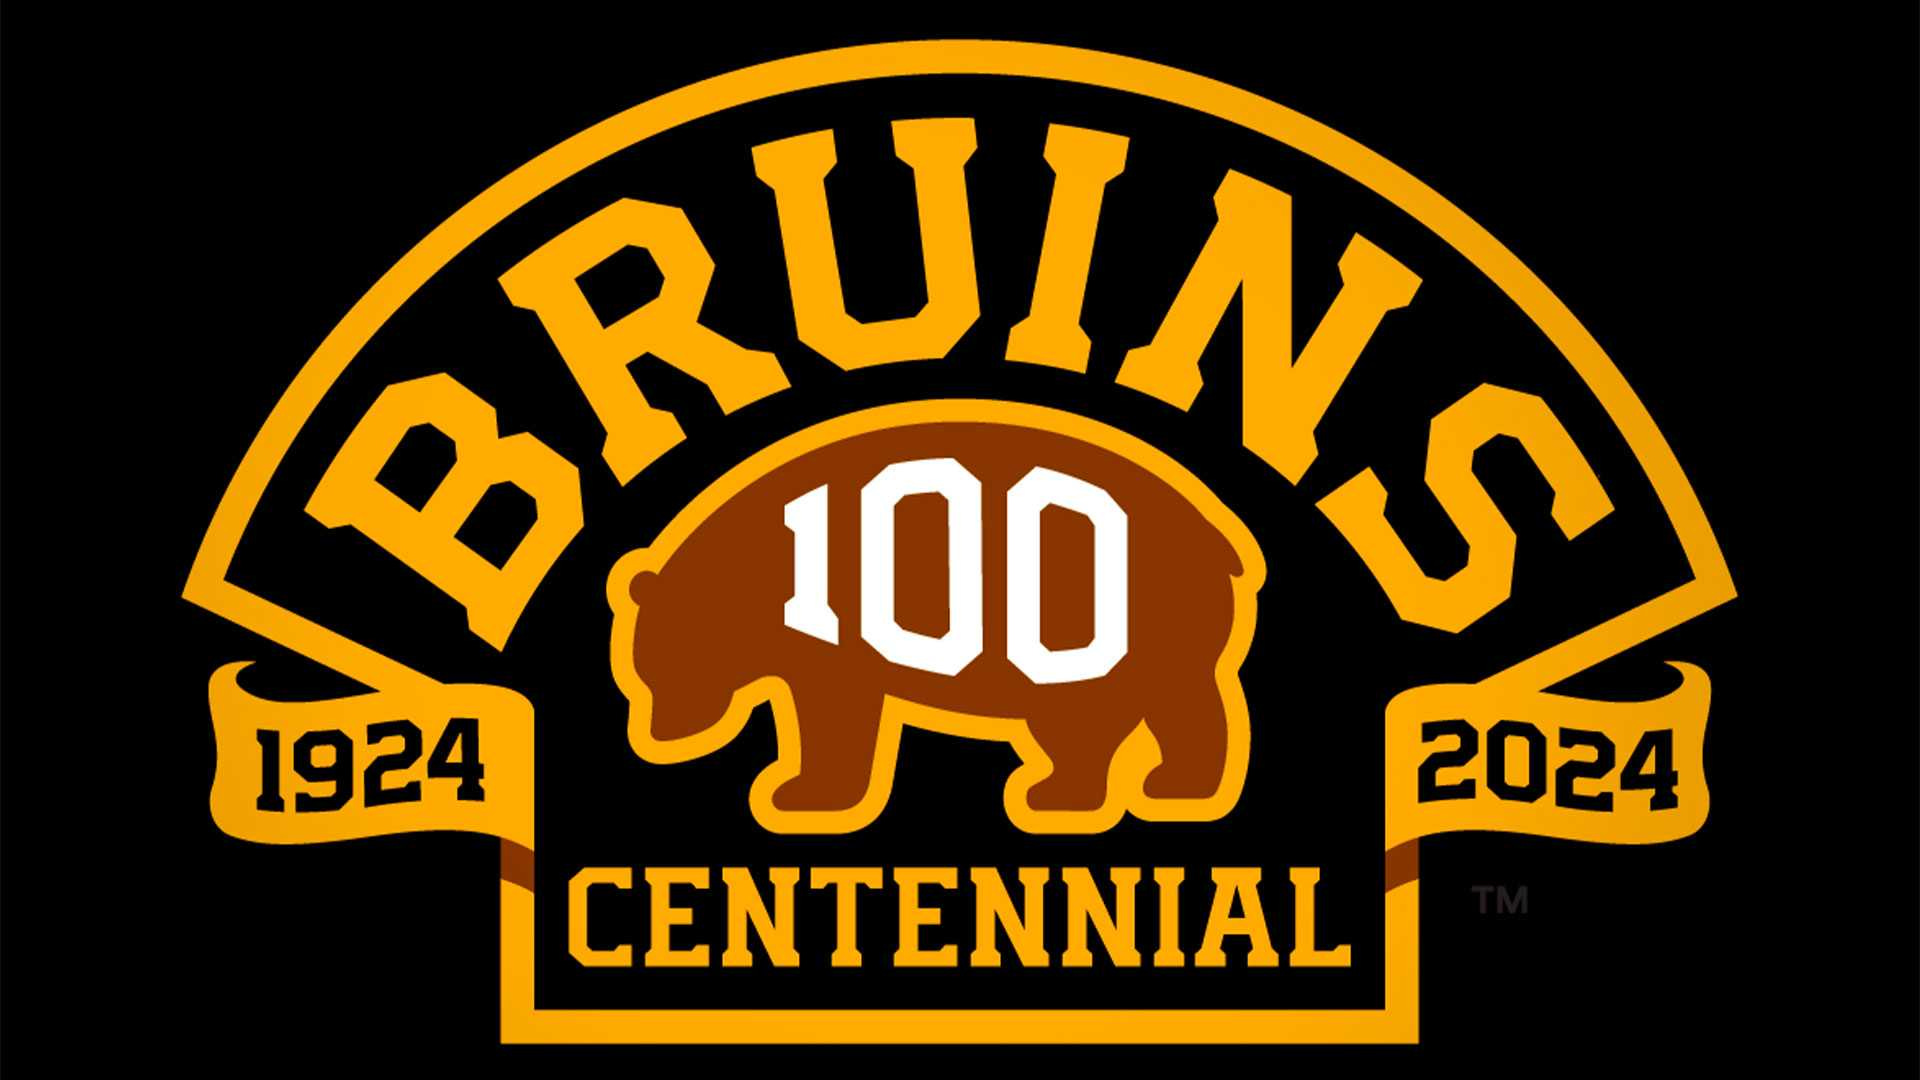 Bruins Centennial Official Game Puck